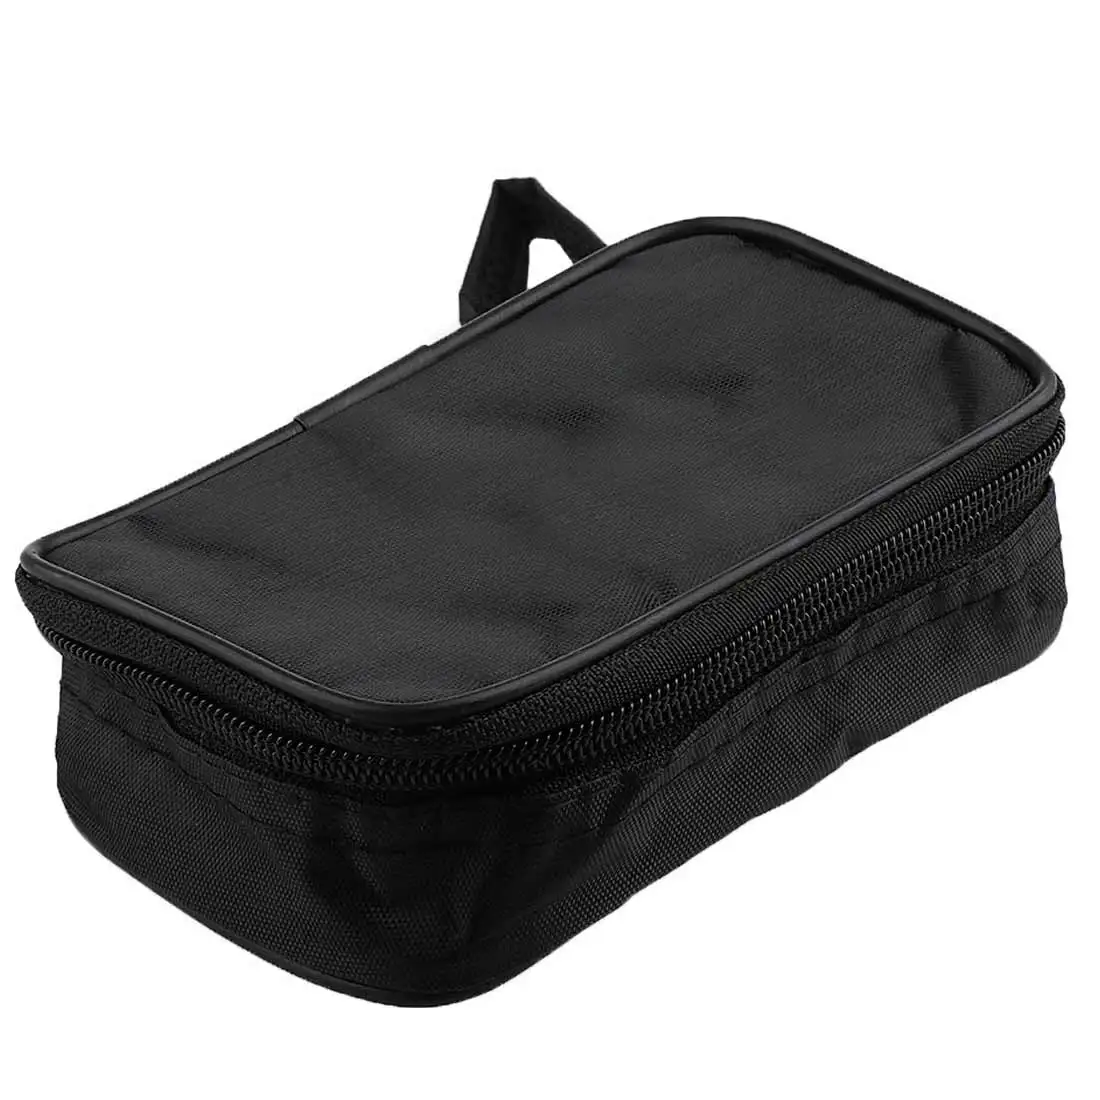 Черный водостойкий Ударопрочный Мягкий чехол 23x14x5 см мультиметр Colth сумка Прочный инструмент сумка